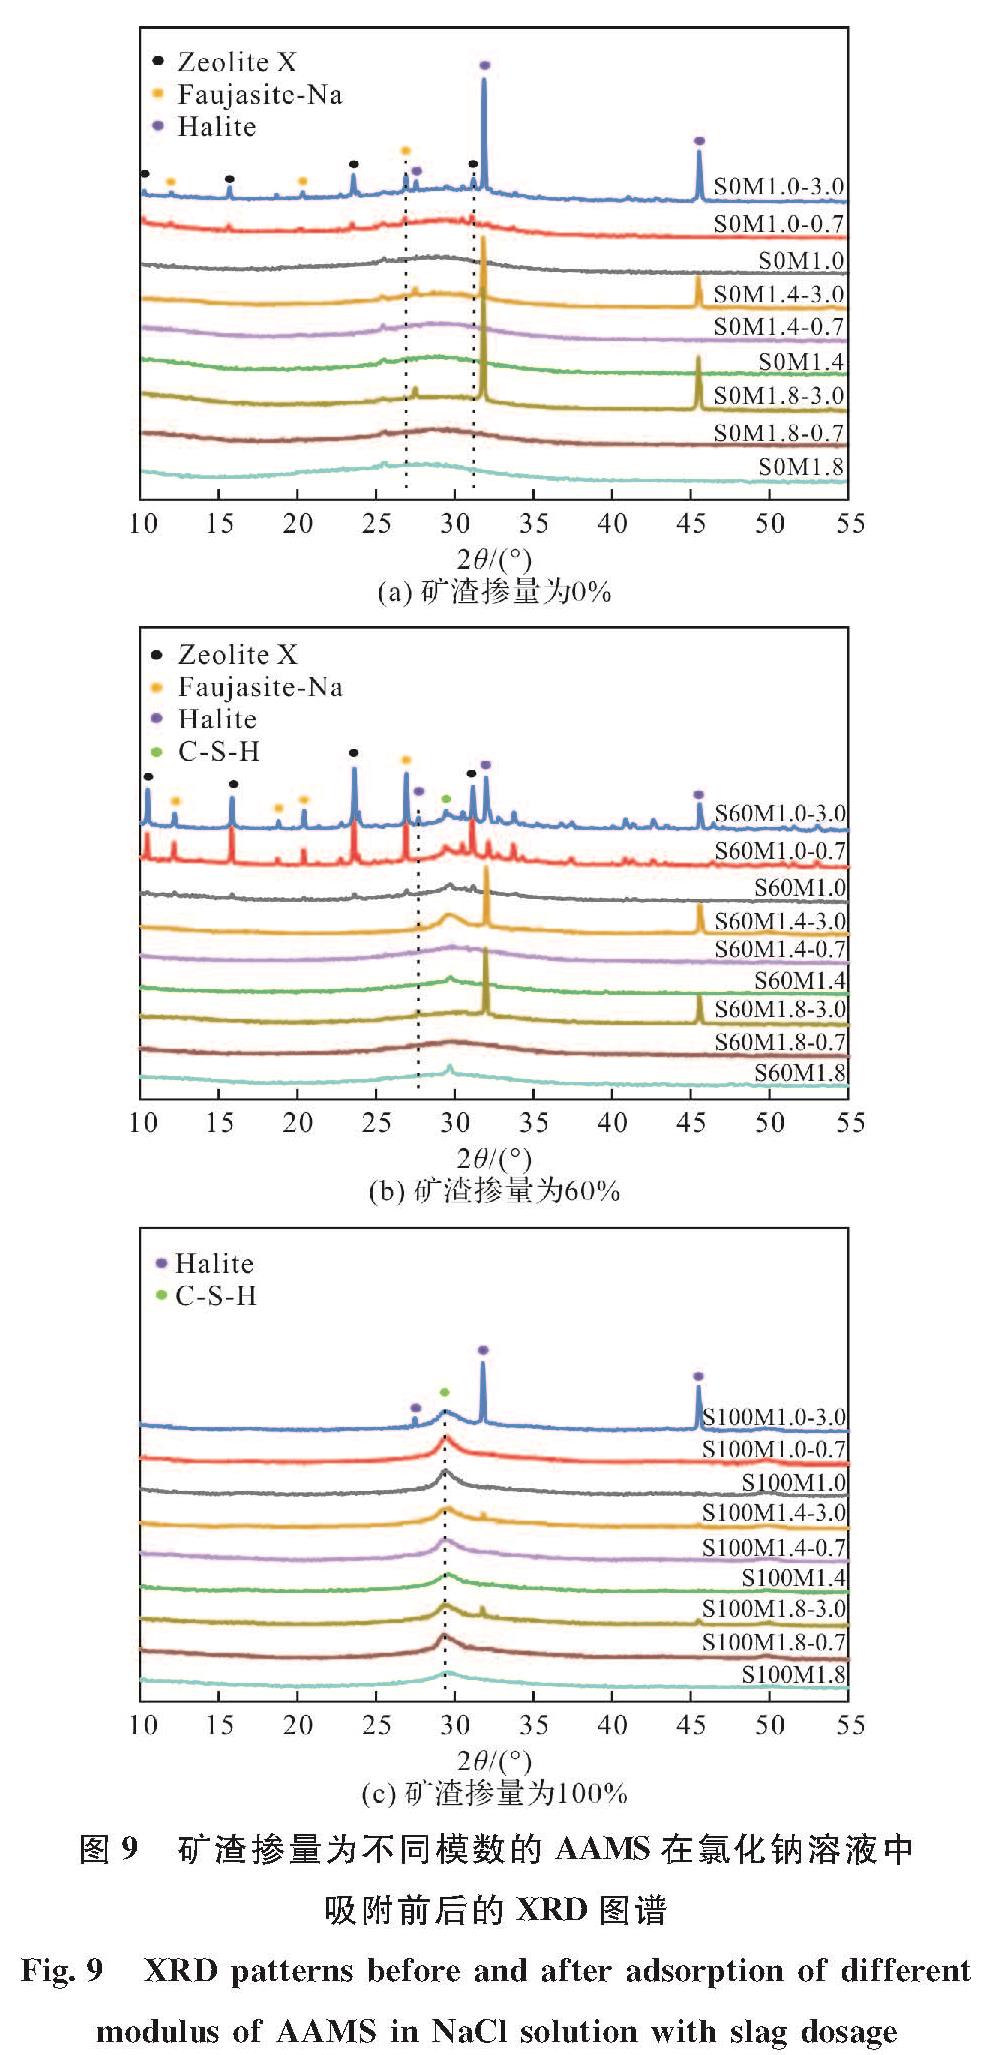 图9 矿渣掺量为不同模数的AAMS在氯化钠溶液中吸附前后的XRD图谱<br/>Fig.9 XRD patterns before and after adsorption of different modulus of AAMS in NaCl solution with slag dosage